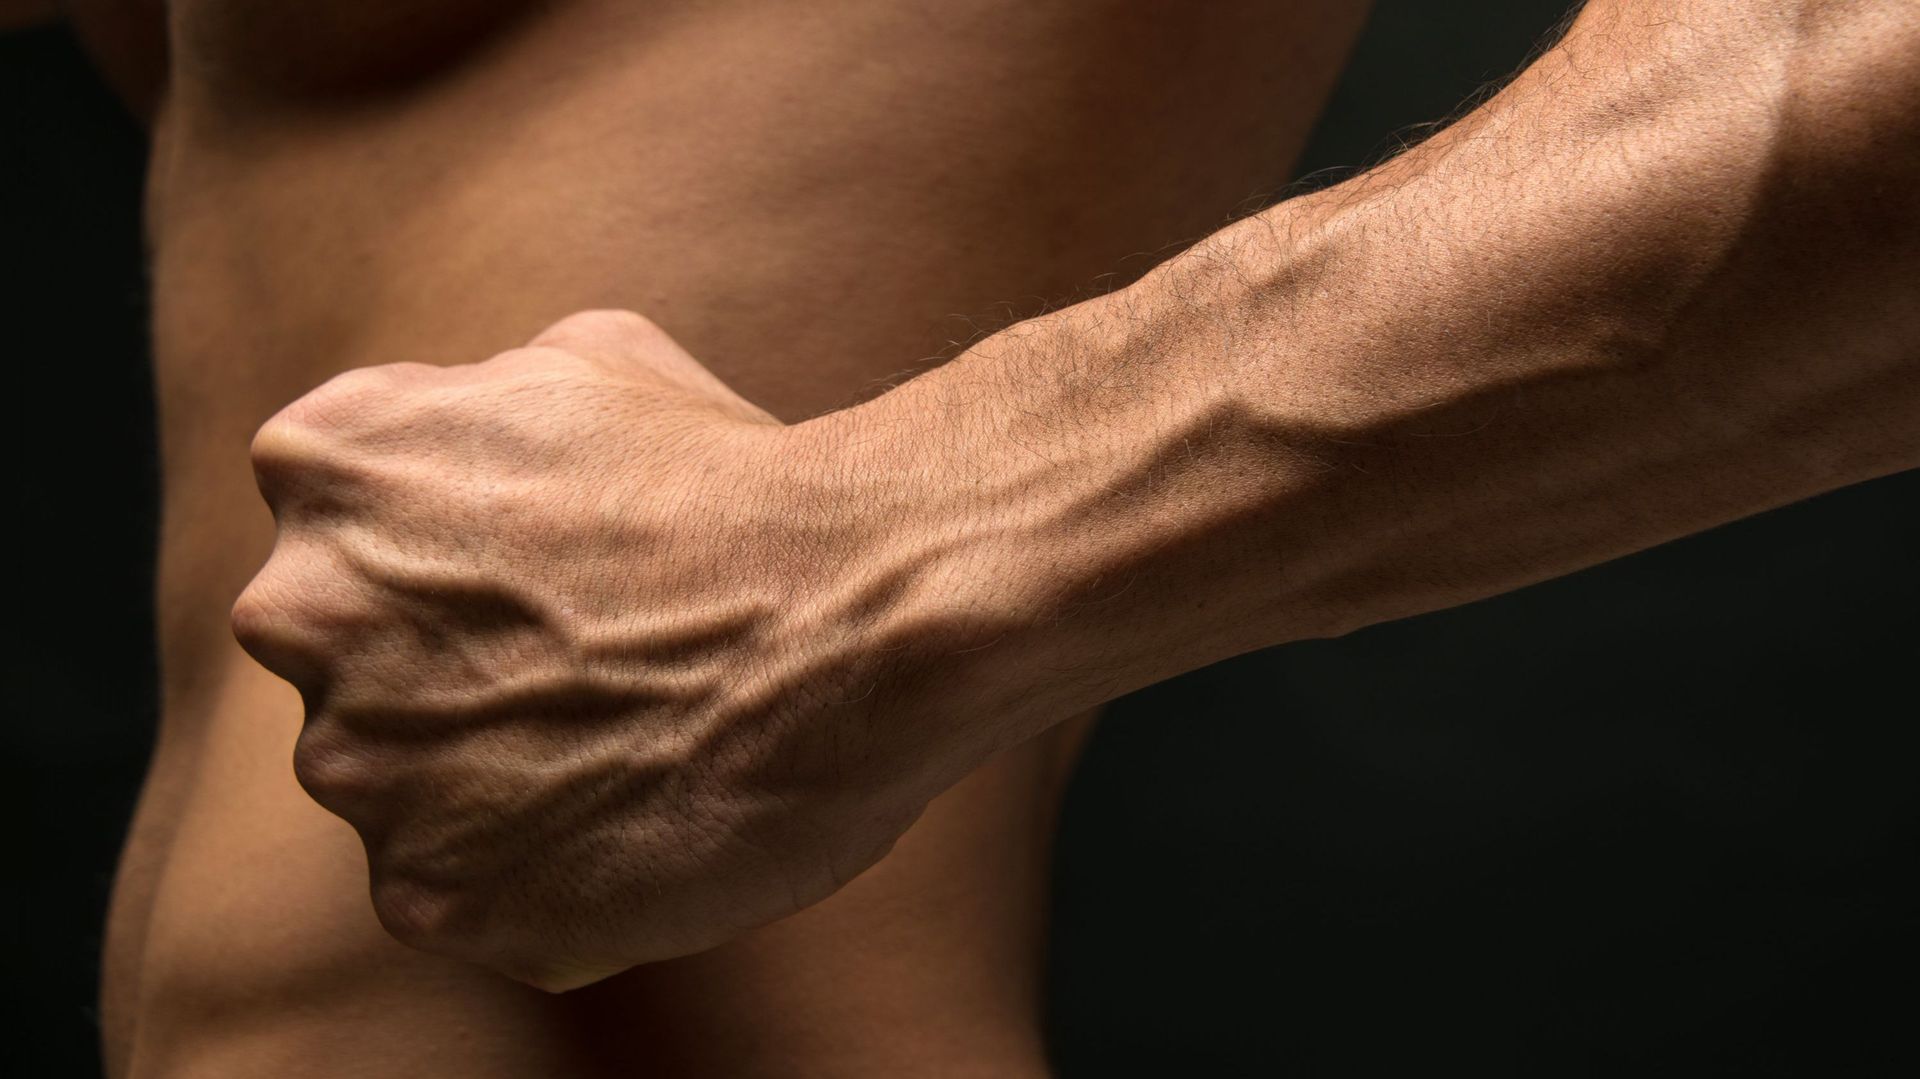 Evolution humaine : une nouvelle artère dans l'avant-bras